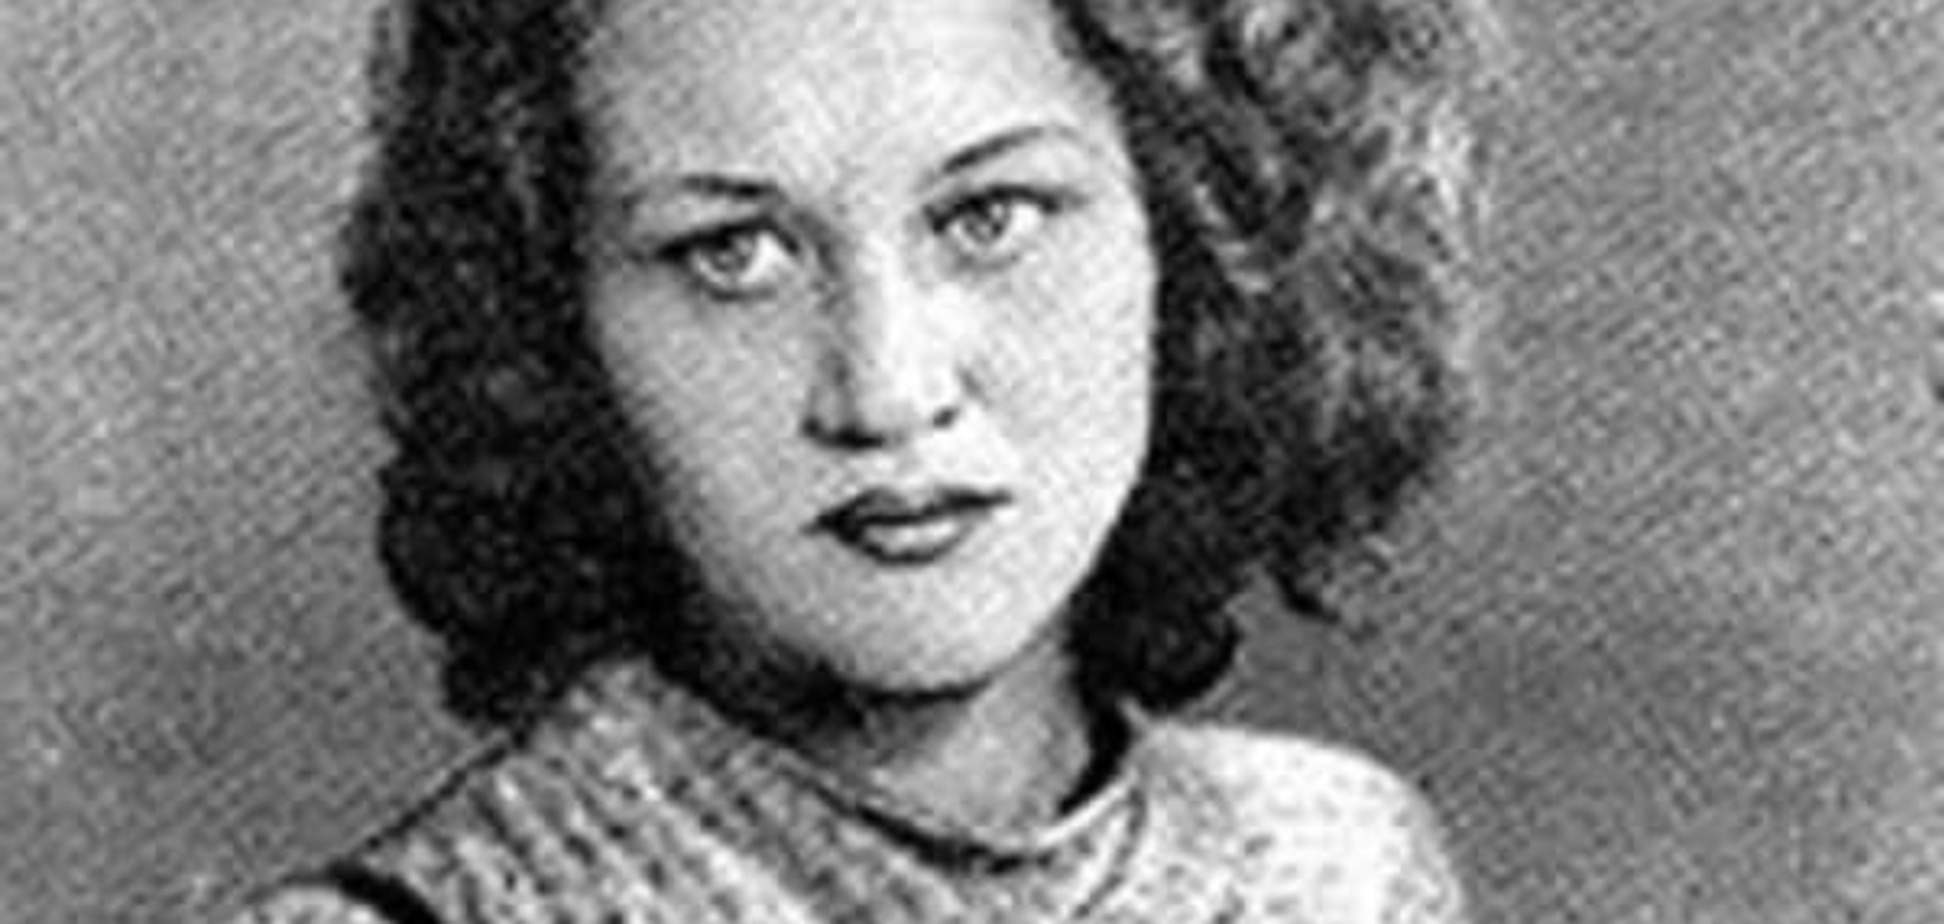 День народження Ліни Костенко: фото поетеси в молодості